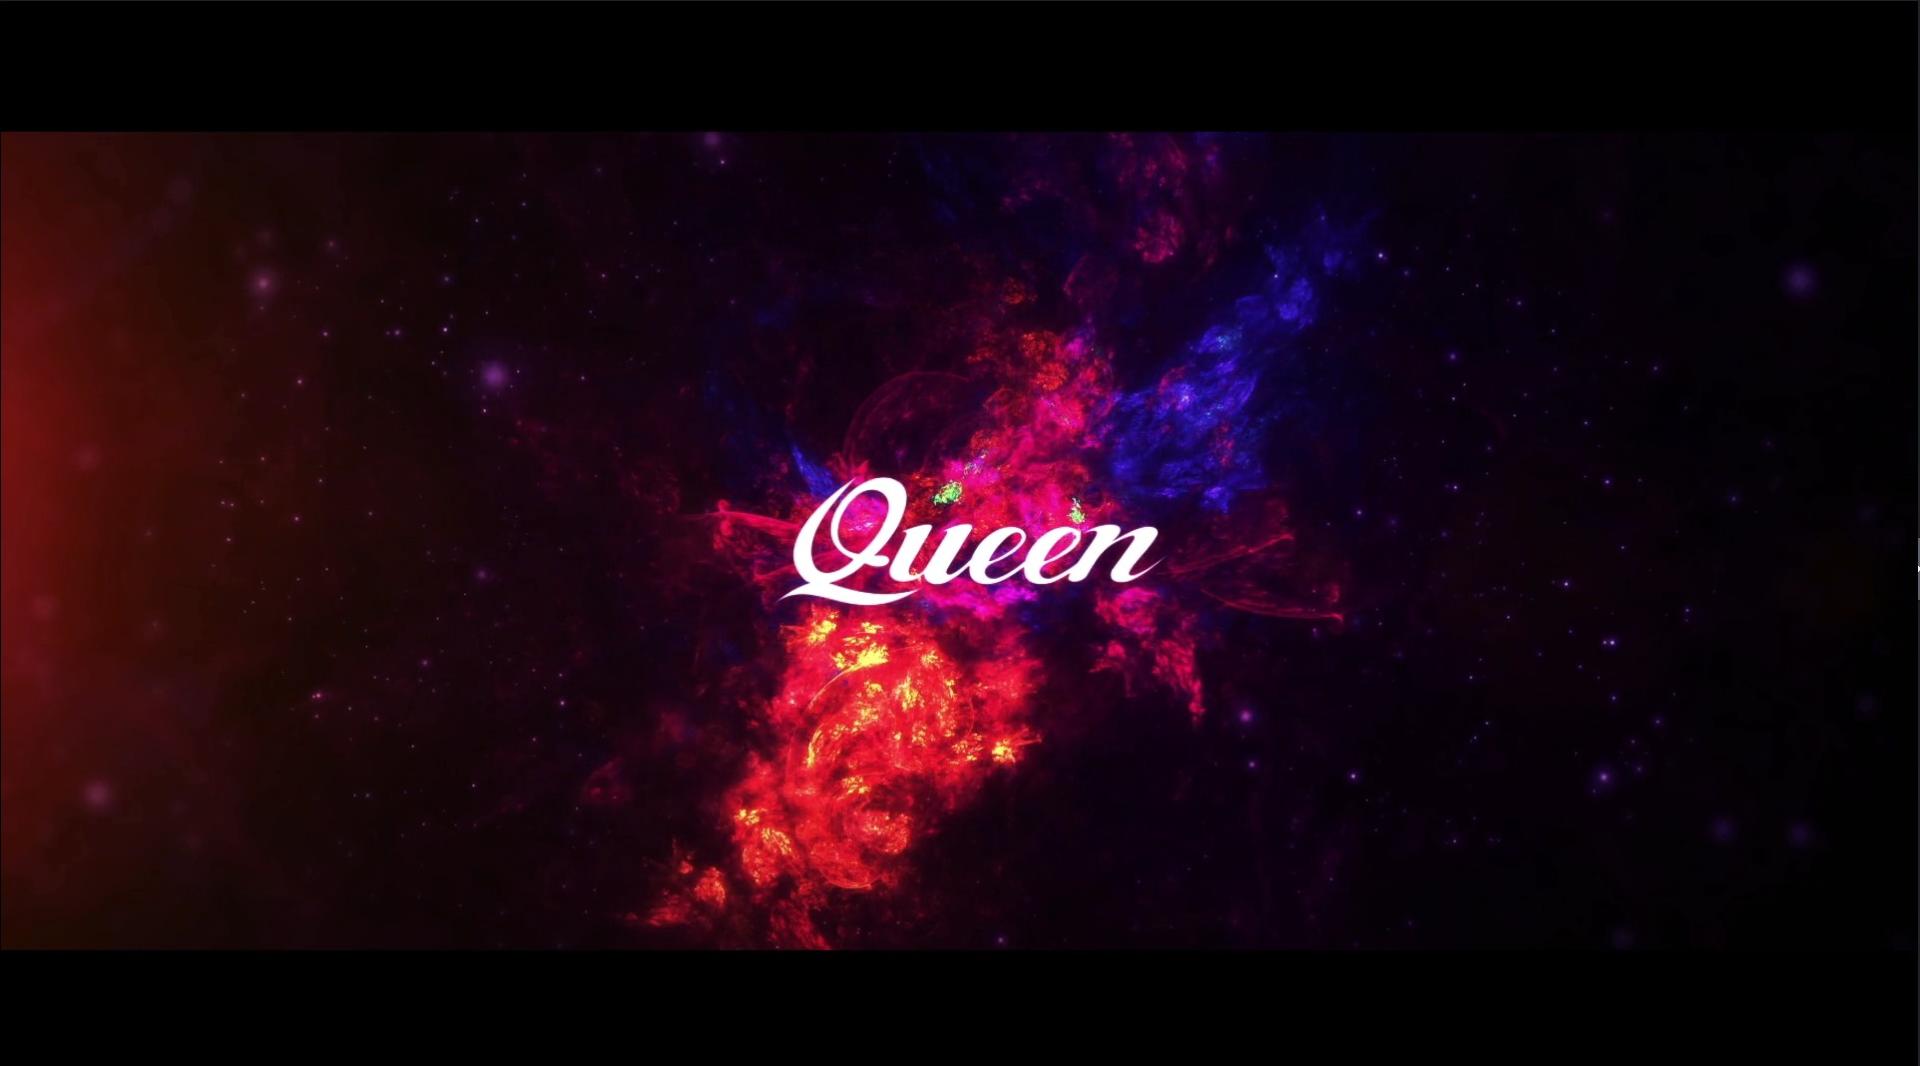 空间巨变，未来已来 “Queen” “X”时代，敬请期待！！！